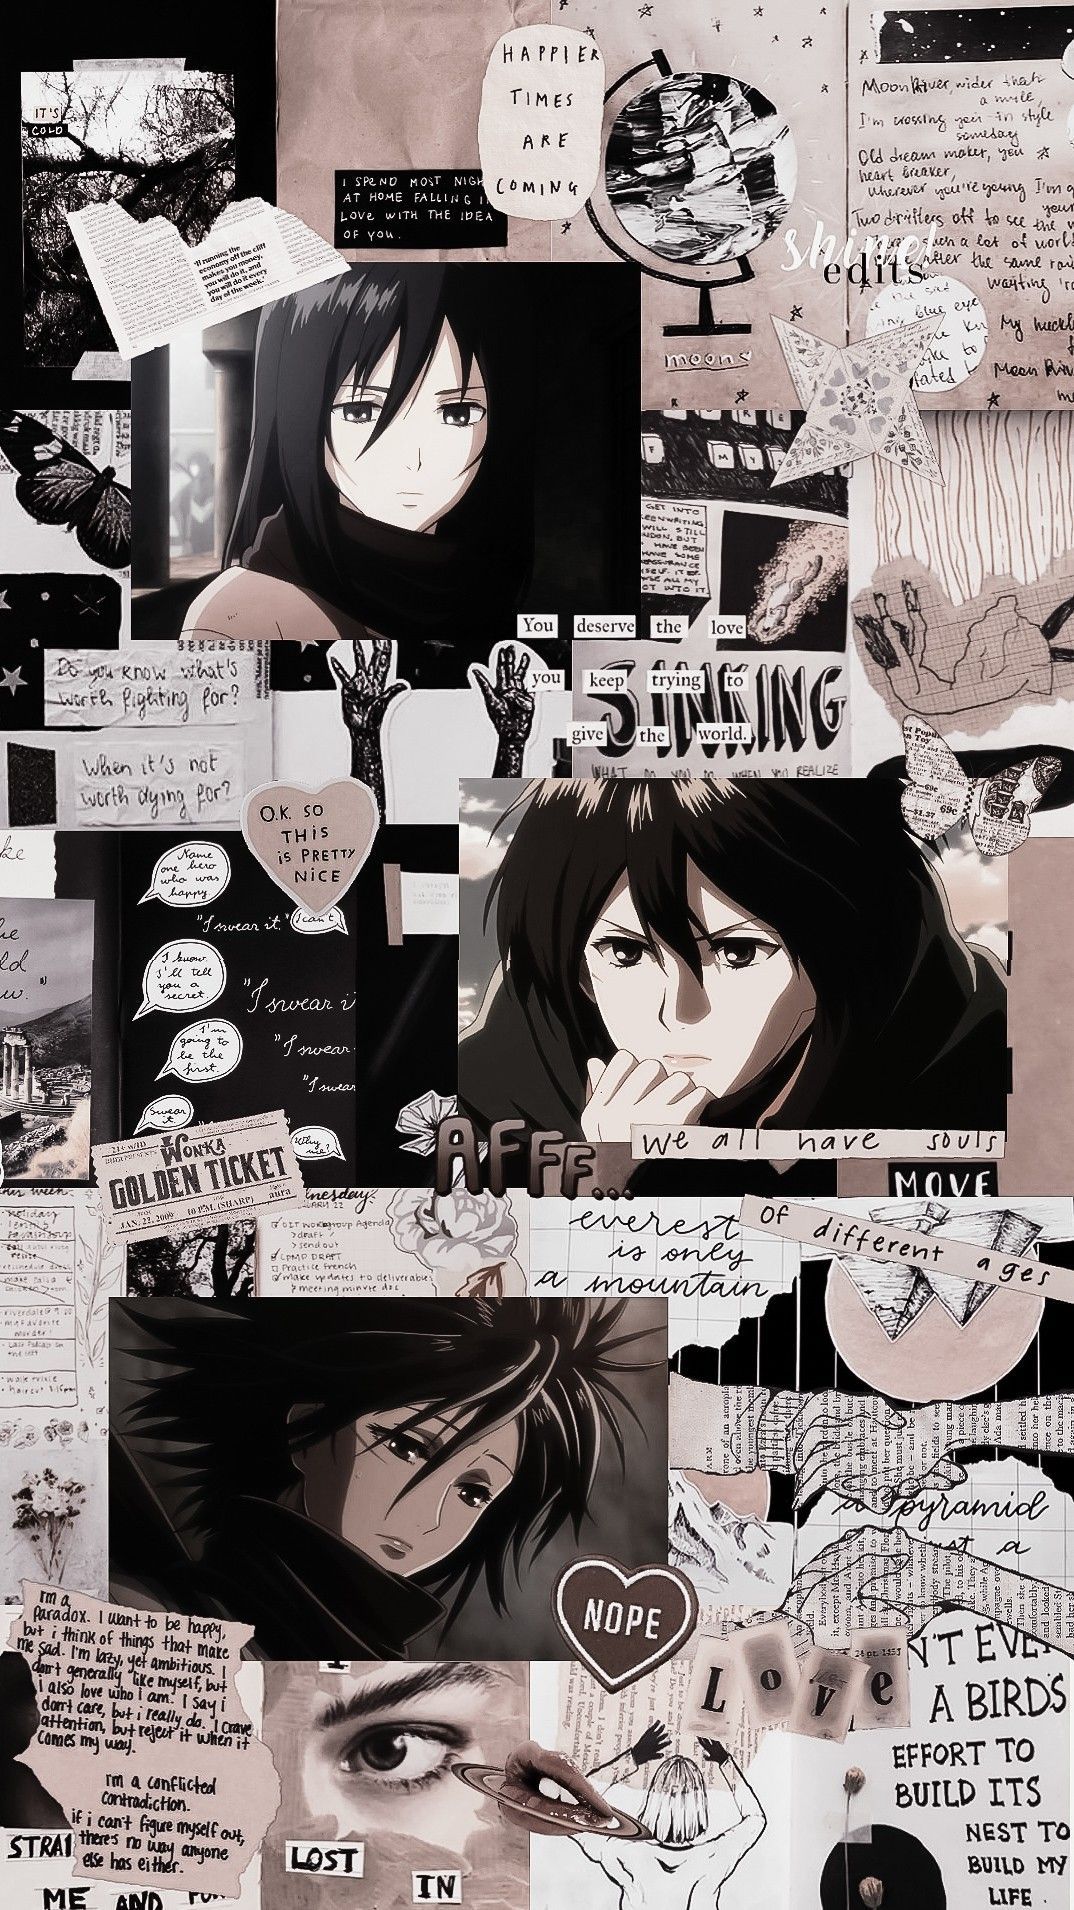 Shingeki no Kyojin. Mikasa. Anime wallpaper iphone, Anime background wallpaper, Cute anime wallpaper